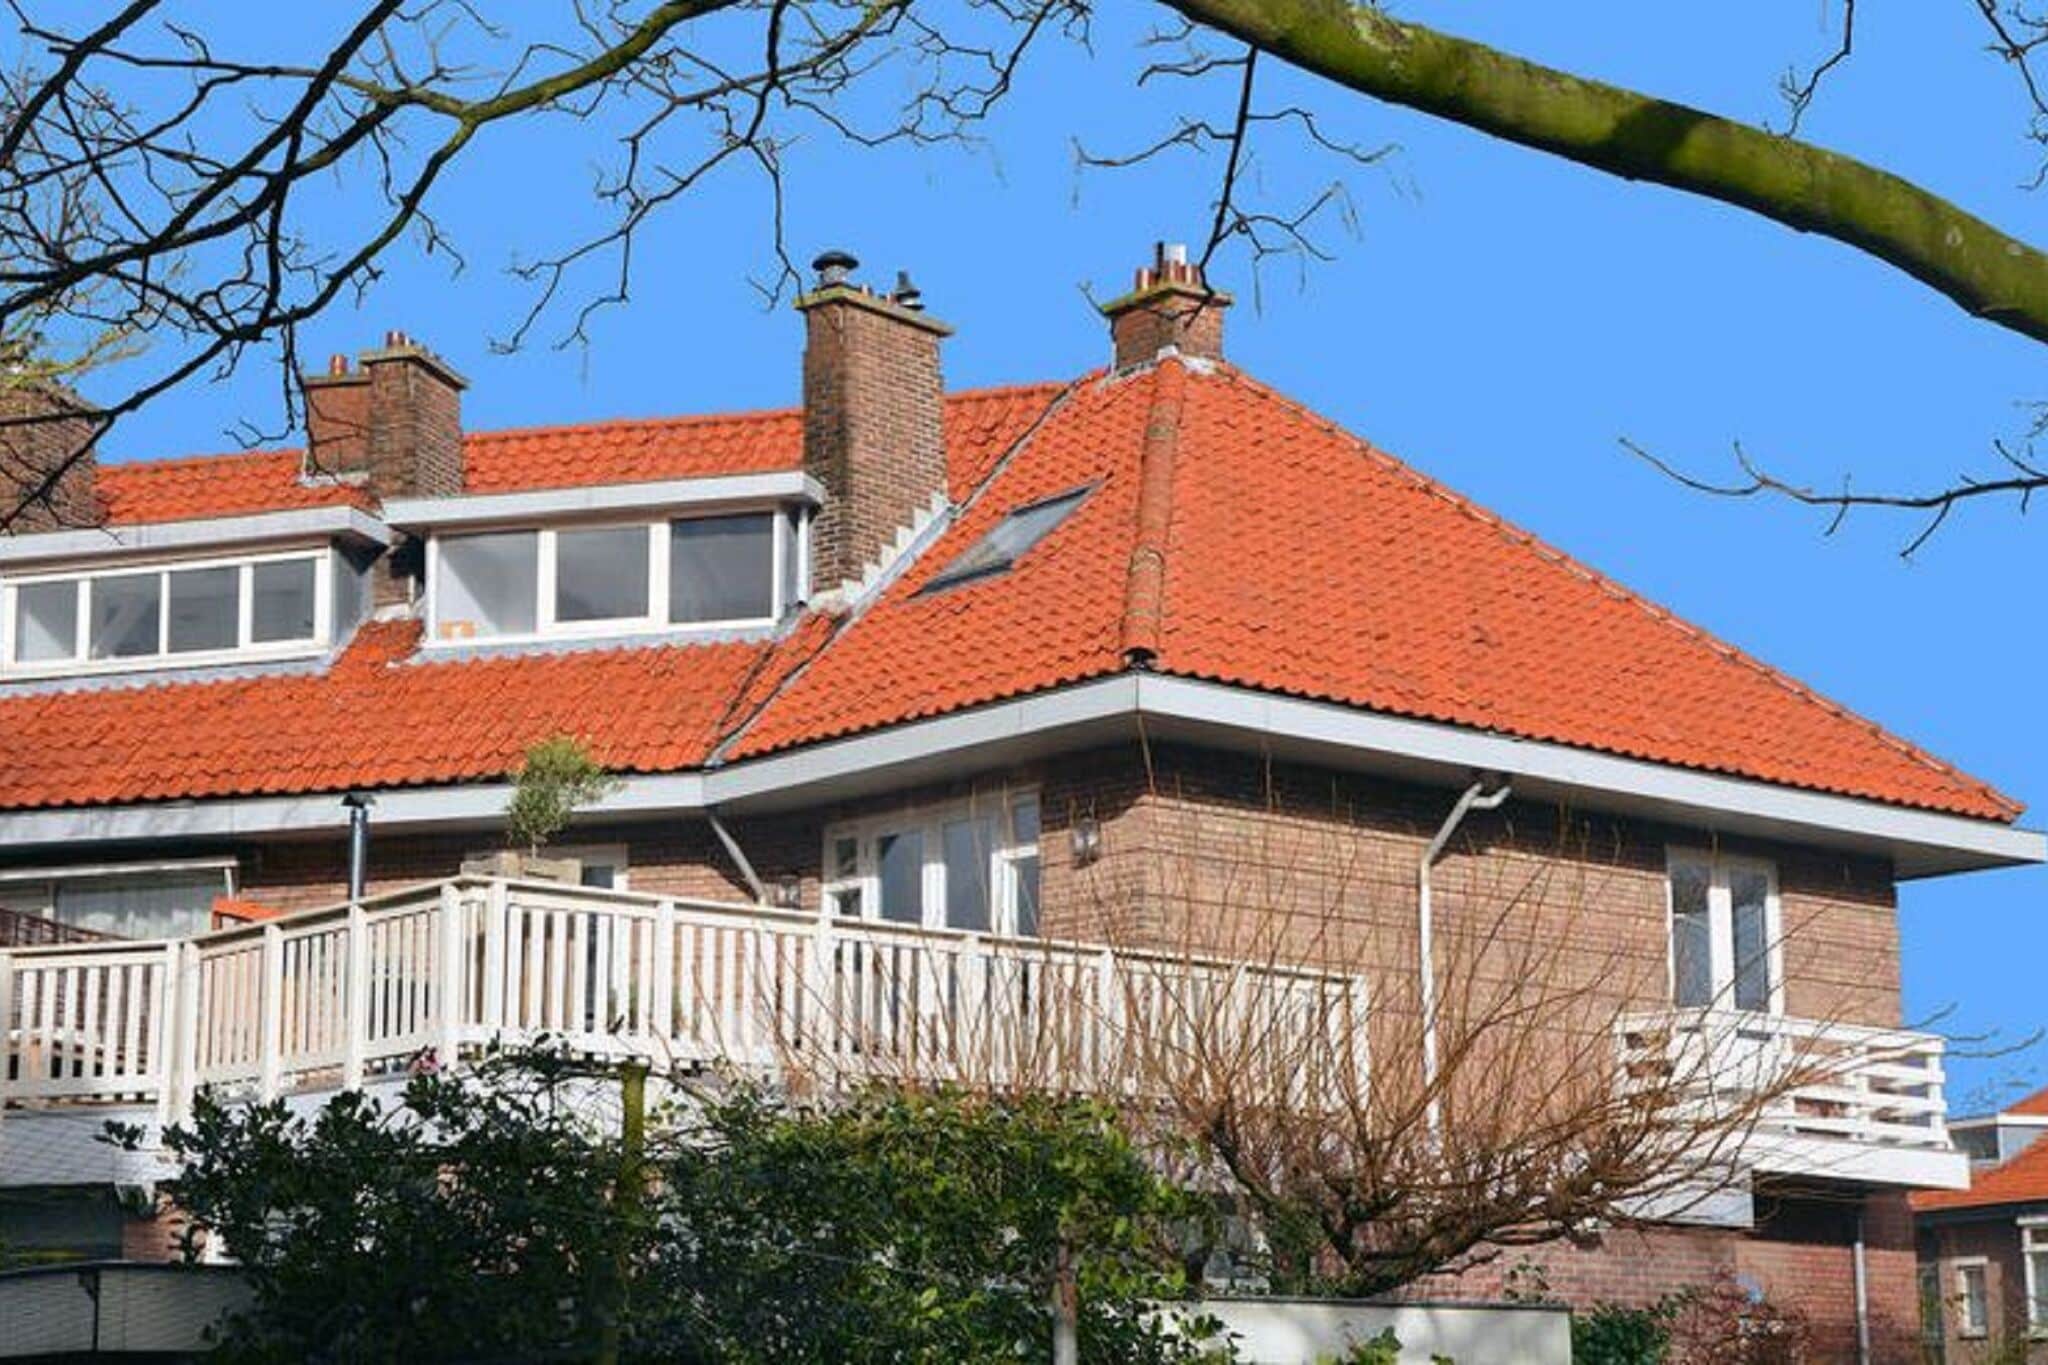 Maison avec terrasse sur le toit à La Haye près de la plage